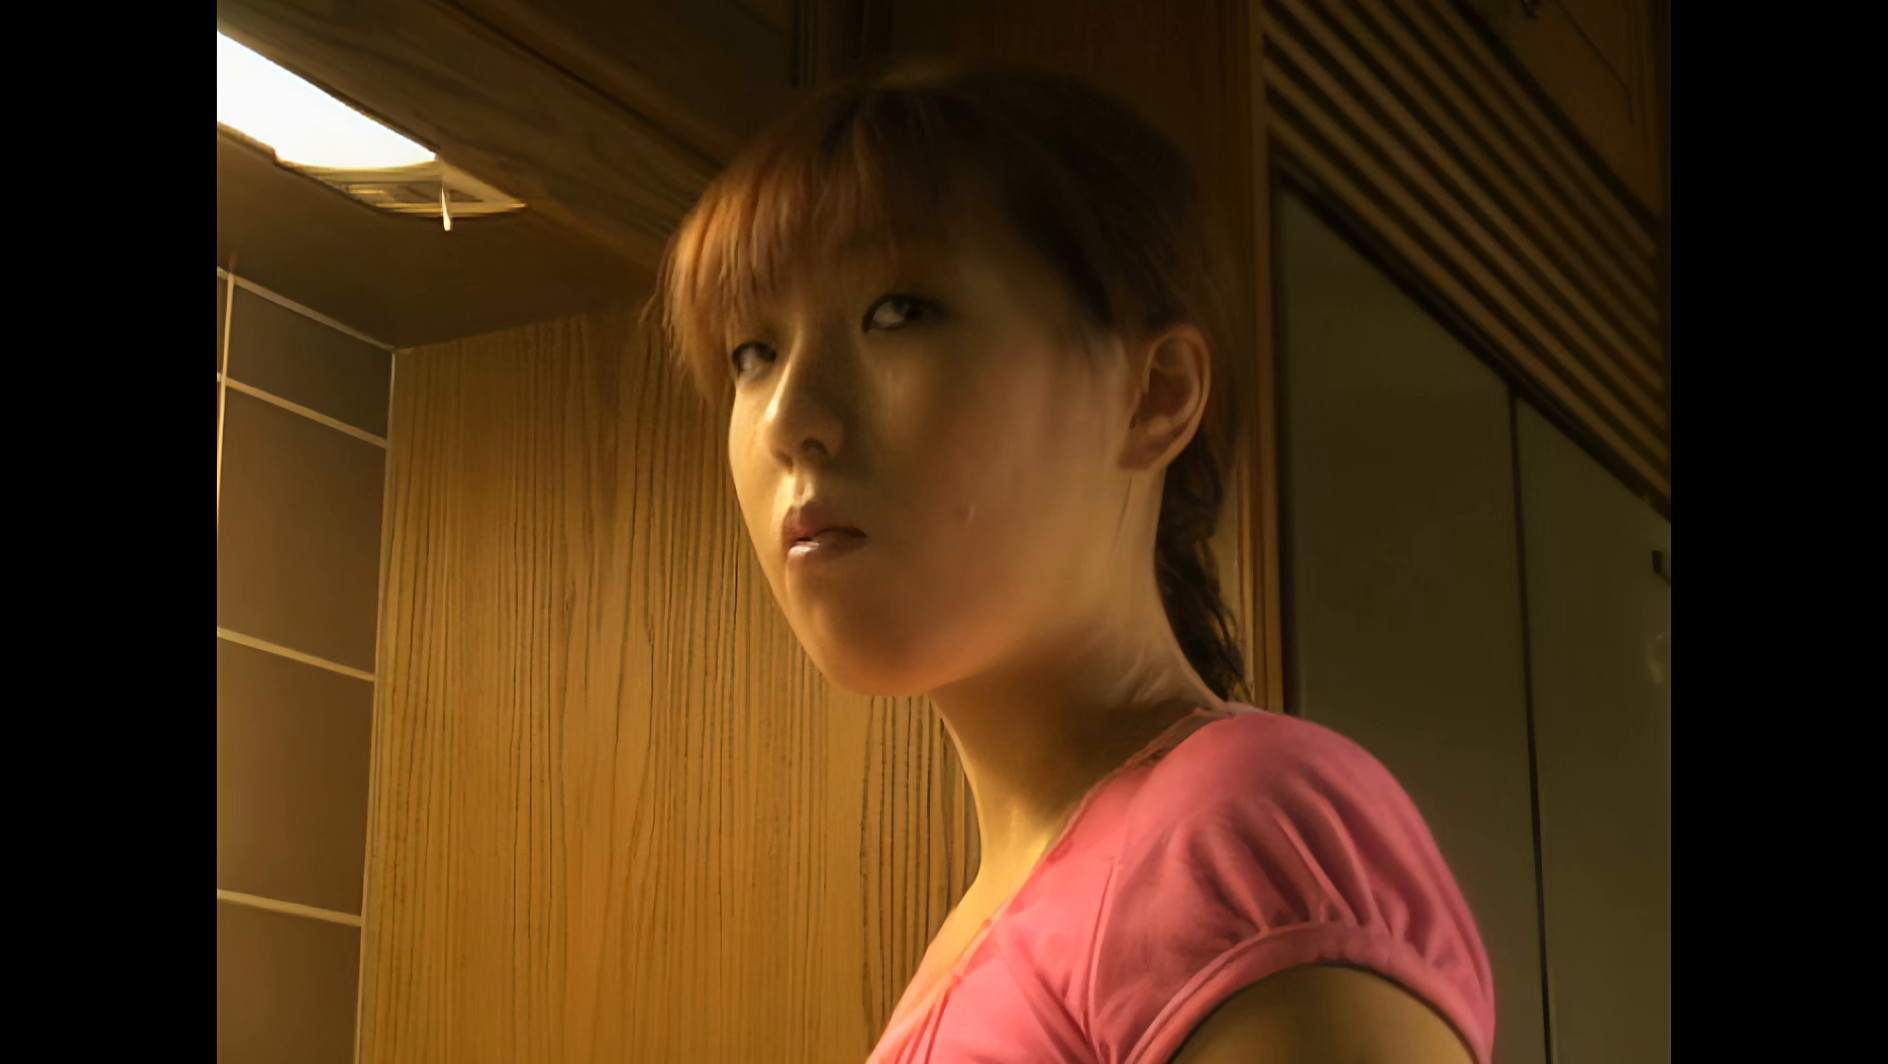 【エロ動画】女子大生 Mの肖像 調教への軌跡 イメージ14